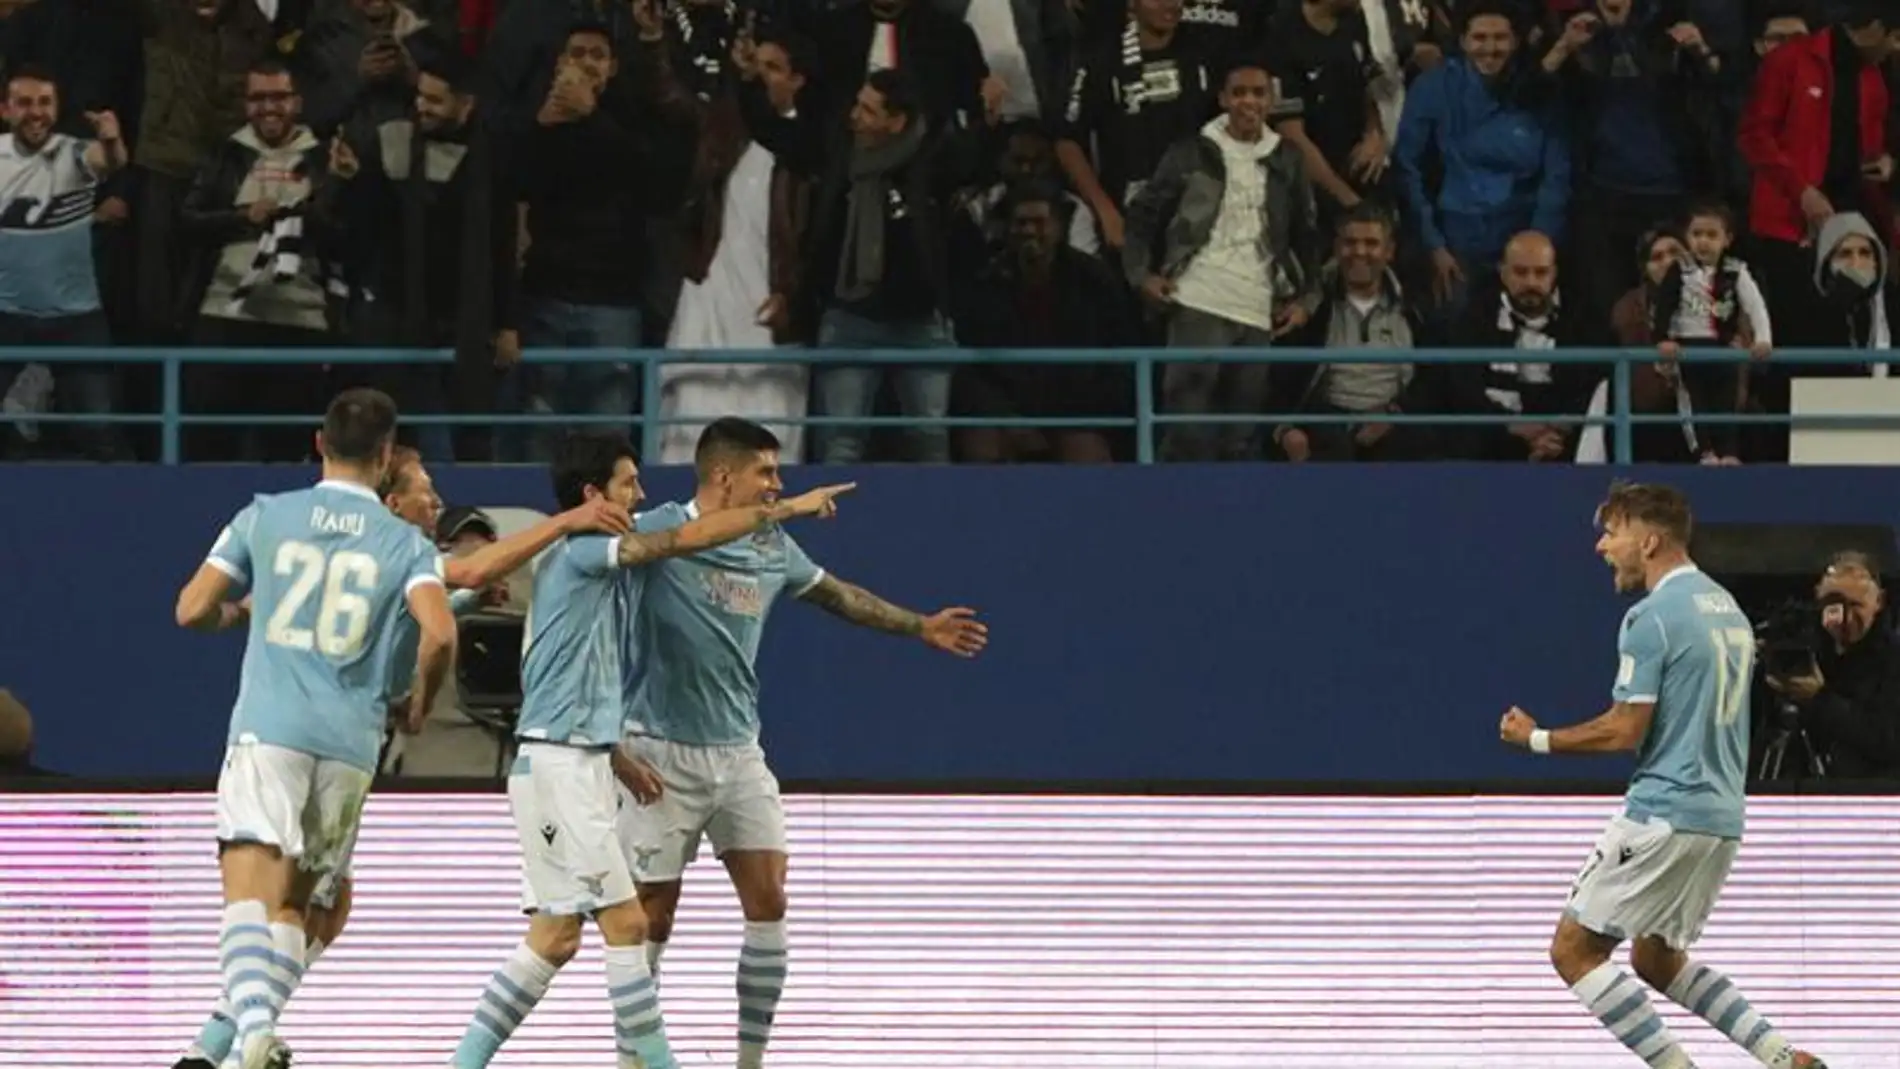  Jugadores celebran un gol durante la SuperCopa italiana